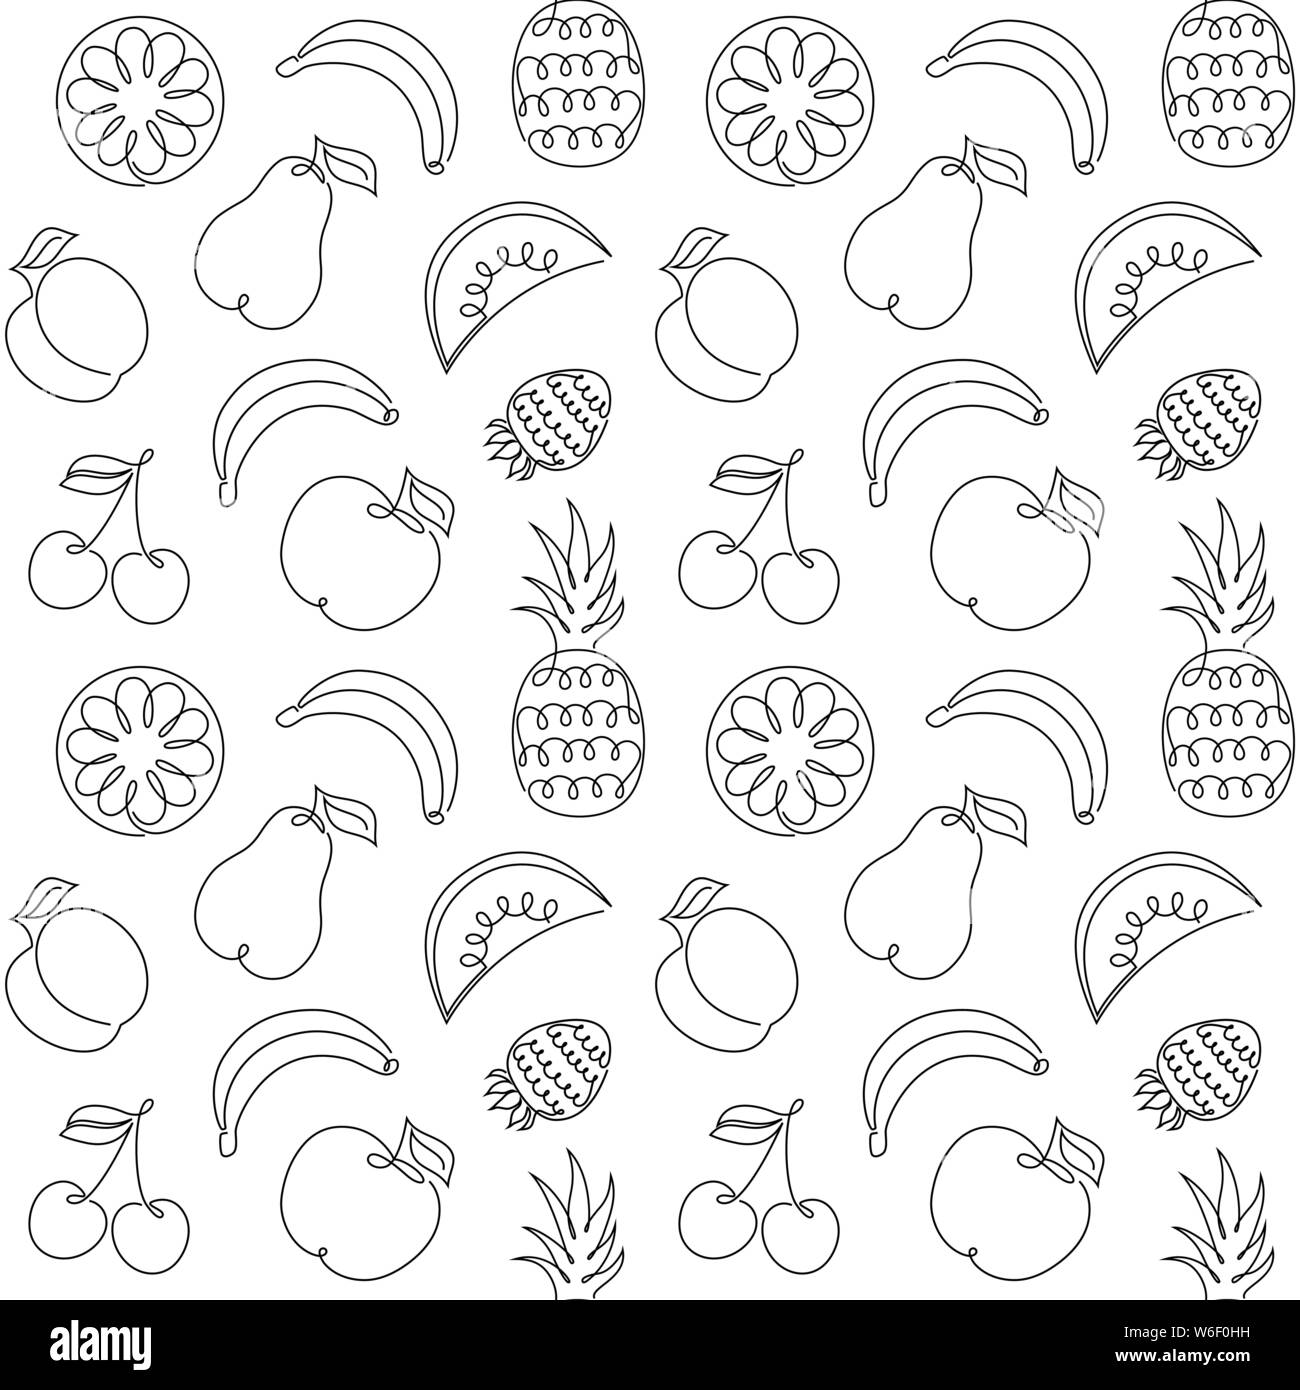 Nahtlose Muster mit Früchten auf weißem Hintergrund. Eine Zeichnung Stil. Es perfekt für die Umhüllung, Verpackung, digitale Papier und vieles mehr. Einfach umfärben. Stock Vektor